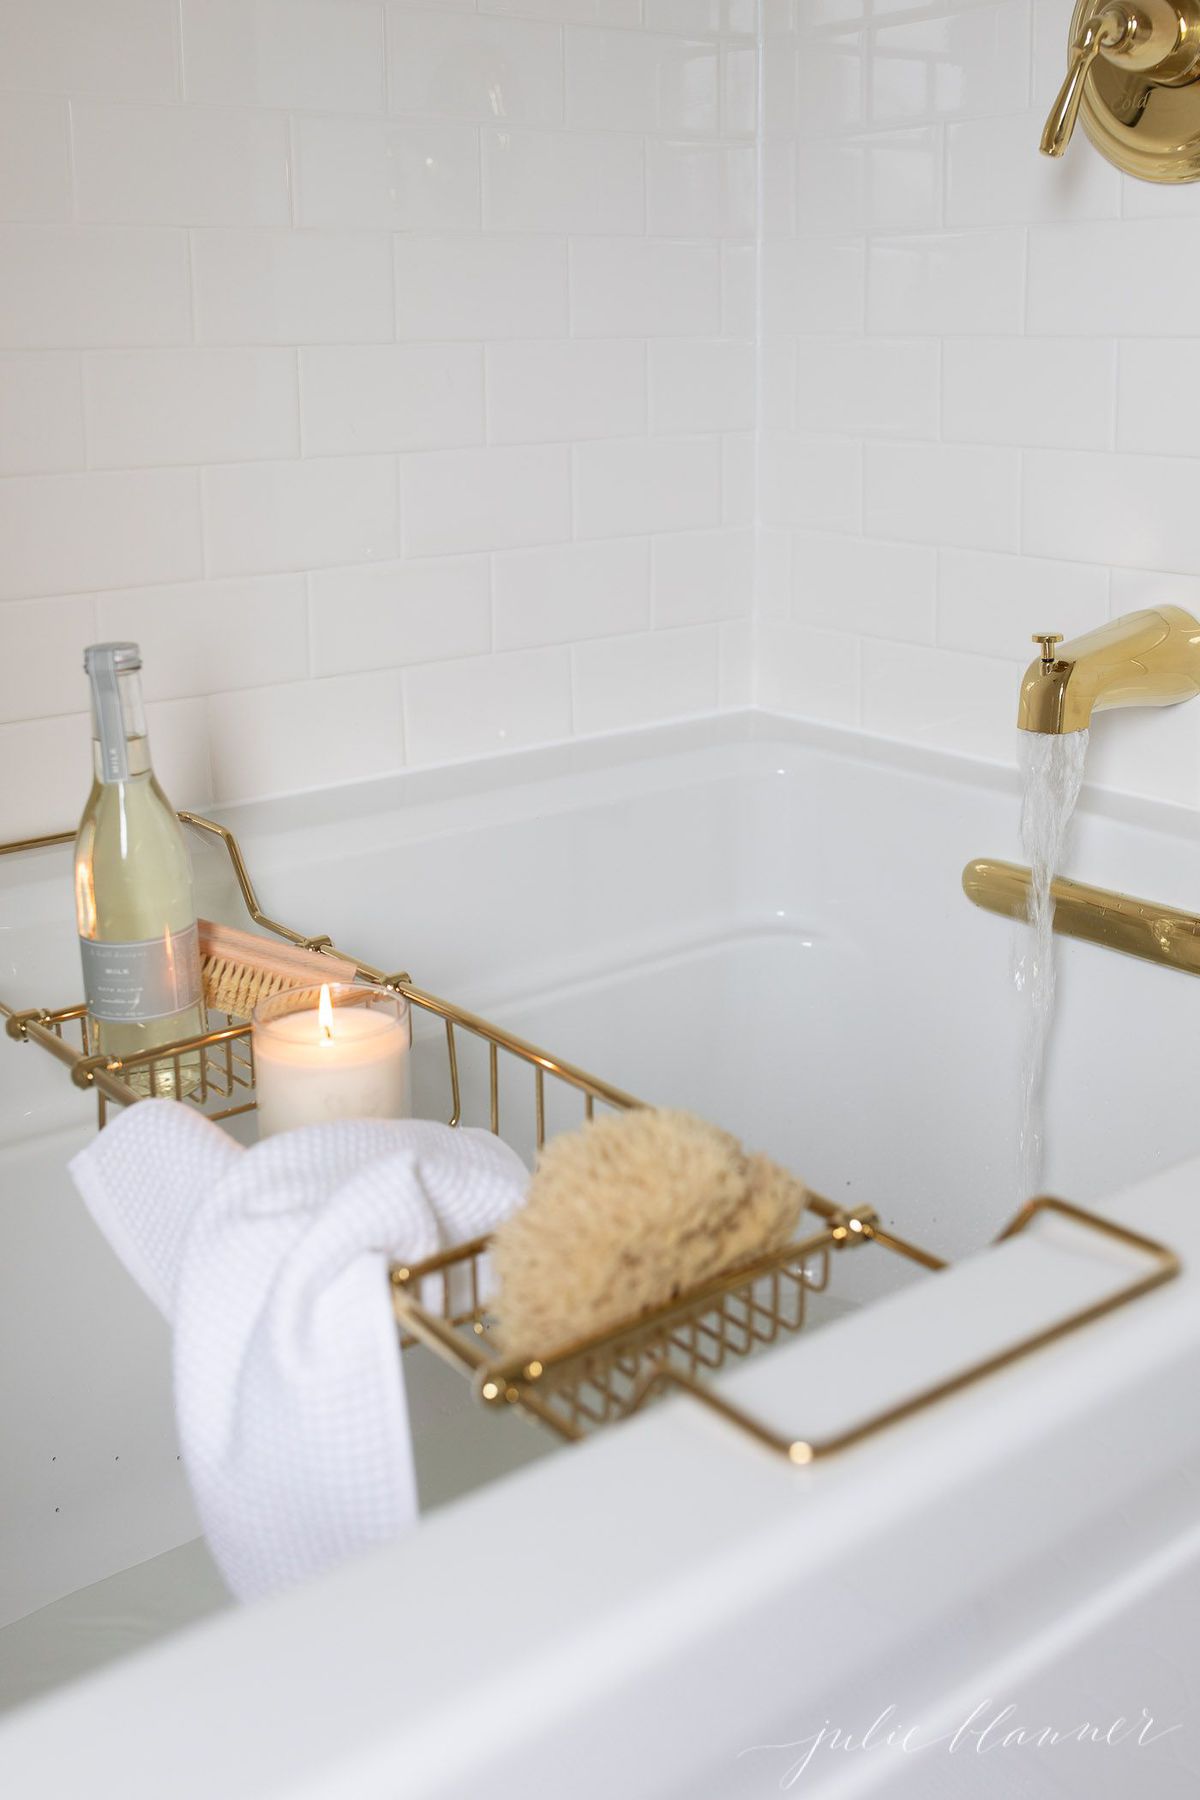 A spa bath with a gold bathtub tray filled with bath stuff